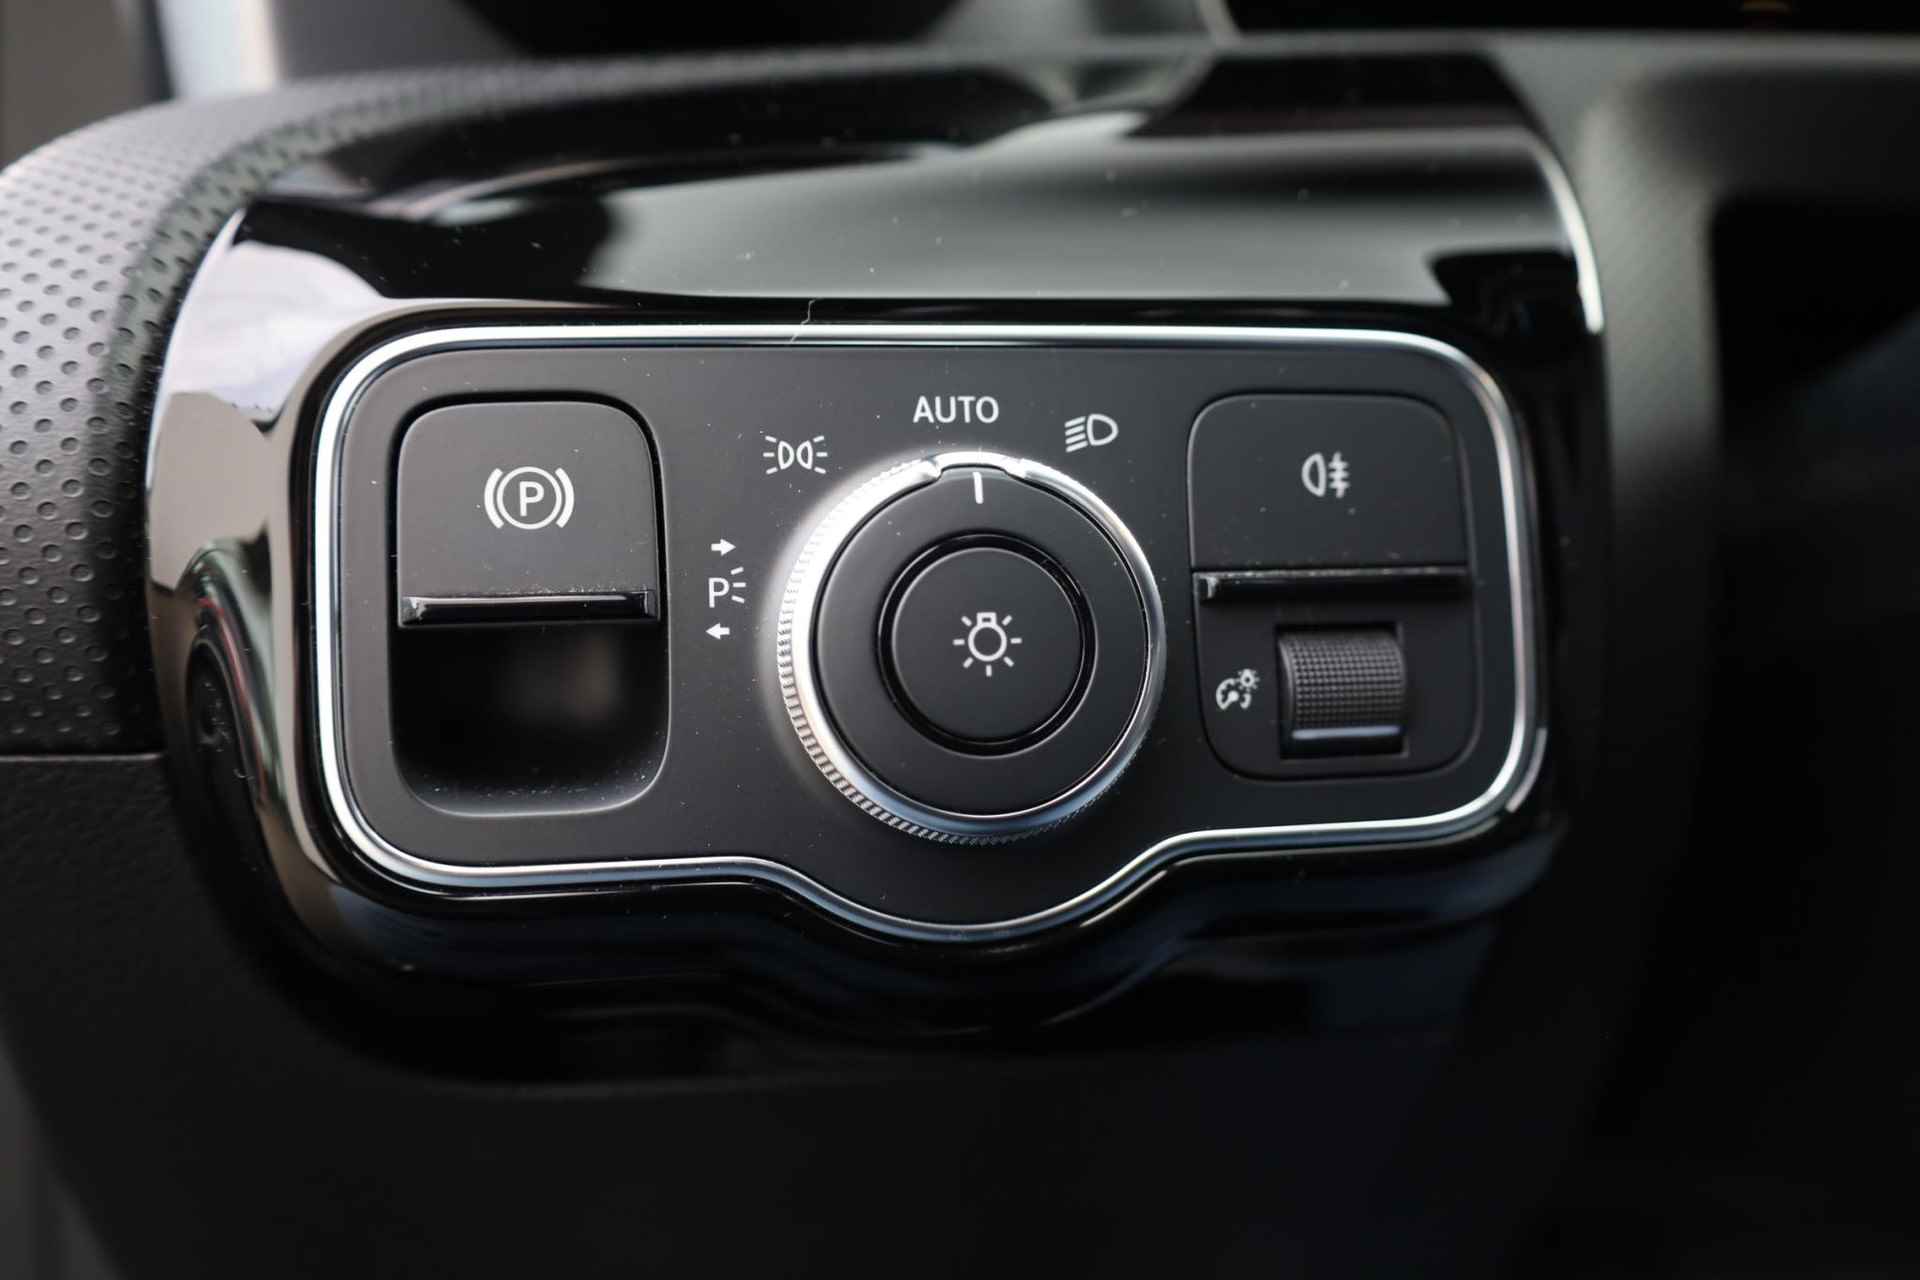 Mercedes-Benz A-klasse 200 Business Solution AMG 163PK / 120kW automaat, Leder / alcantara, winterset LMV, digitaal dashboard, navigatie, LED verlichting voor en achter, 18" LMV, stoelverwarming, parkeersensoren voor en achter, AMG bumpers - 14/44